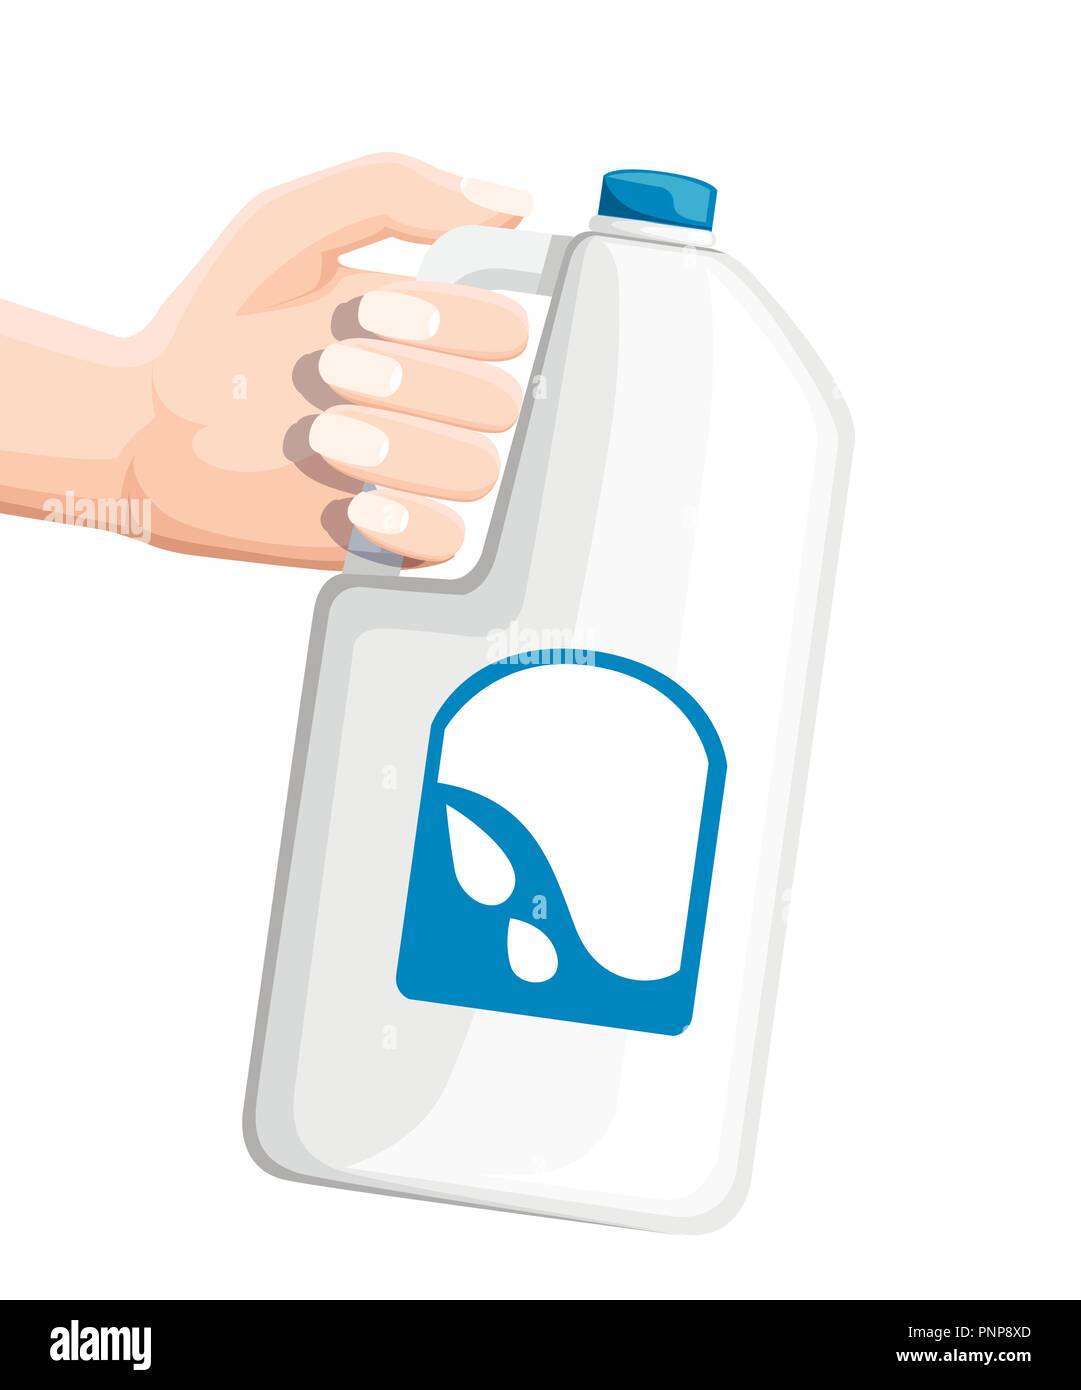 Mano sujetando la botella de plástico grande con leche. Vaso de Leche blanca. Ilustración vectorial plano aislado sobre fondo blanco. Ilustración del Vector